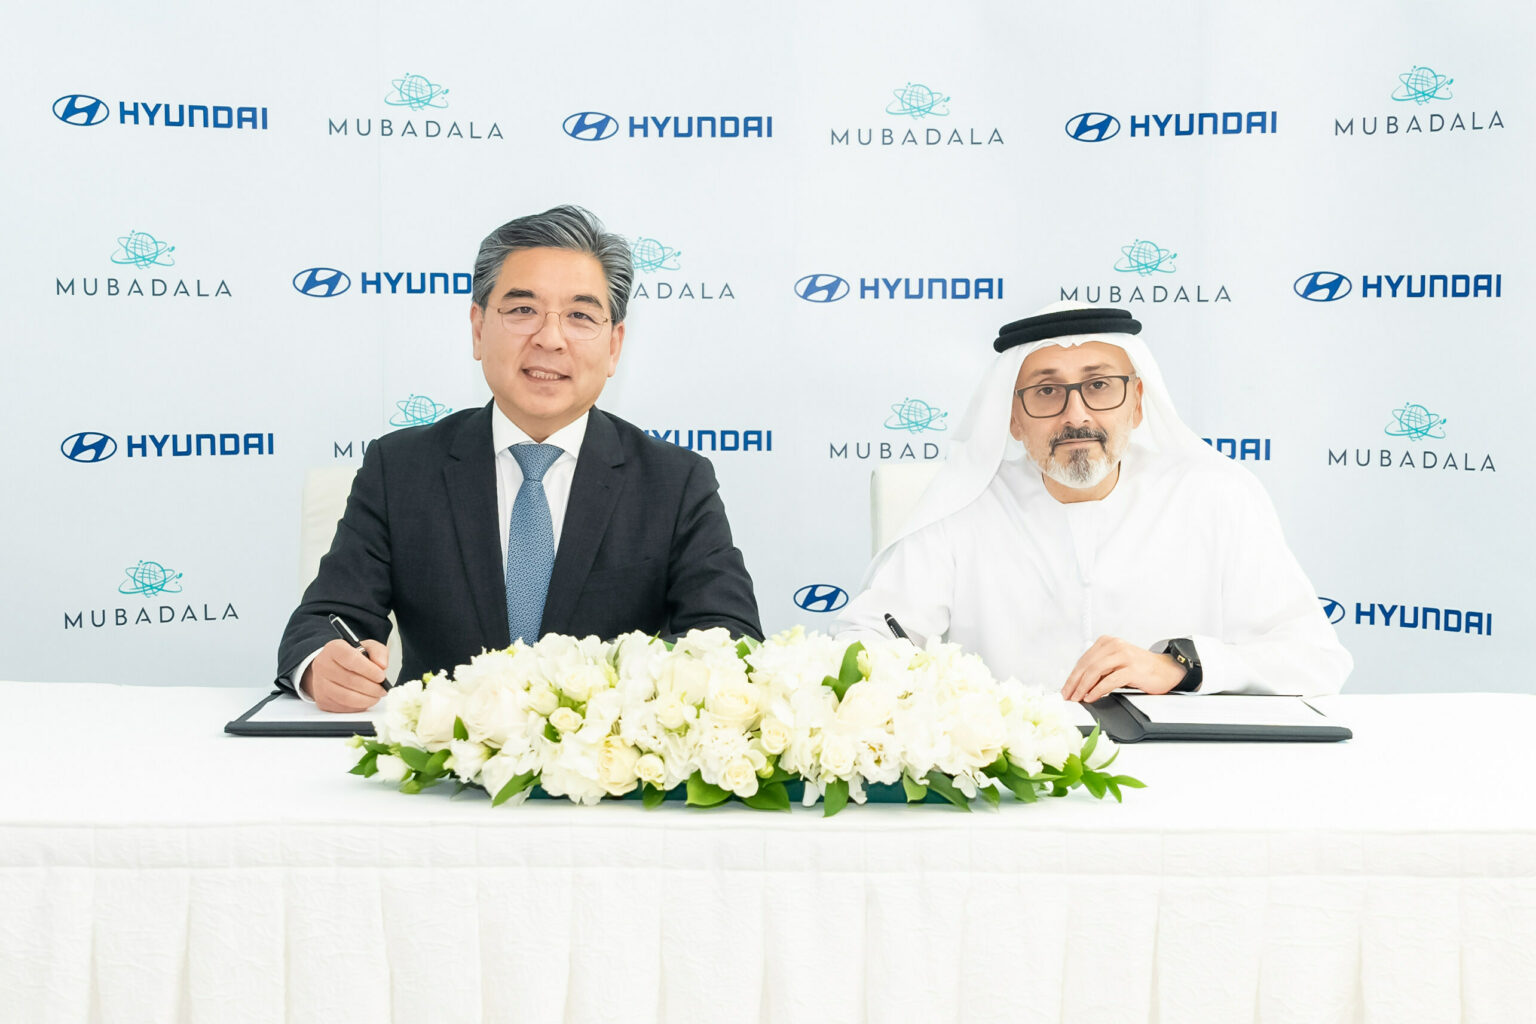 Hiệp ước Hyundai-Mubadala giải phóng sức mạnh tổng hợp công nghệ xanh